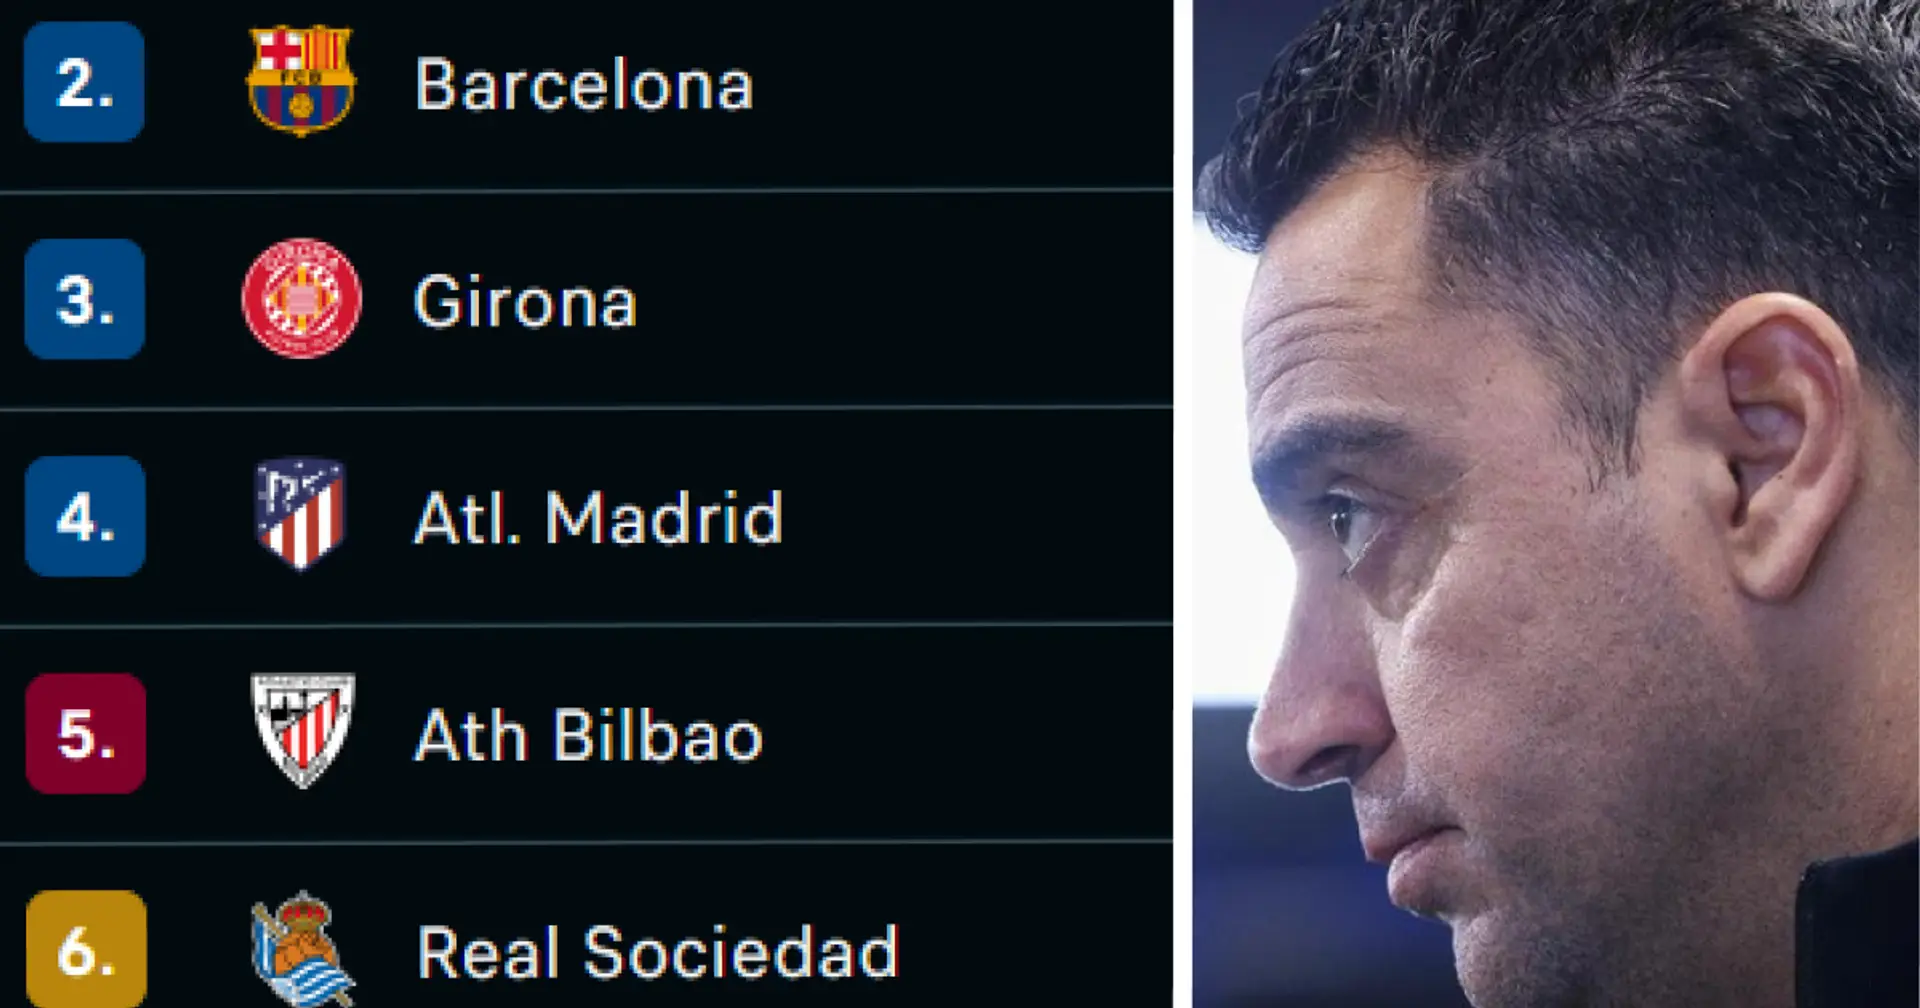 Le classement de la Liga après la victoire vs Cadix montre ce dont le Barça a besoin pour conserver son titre